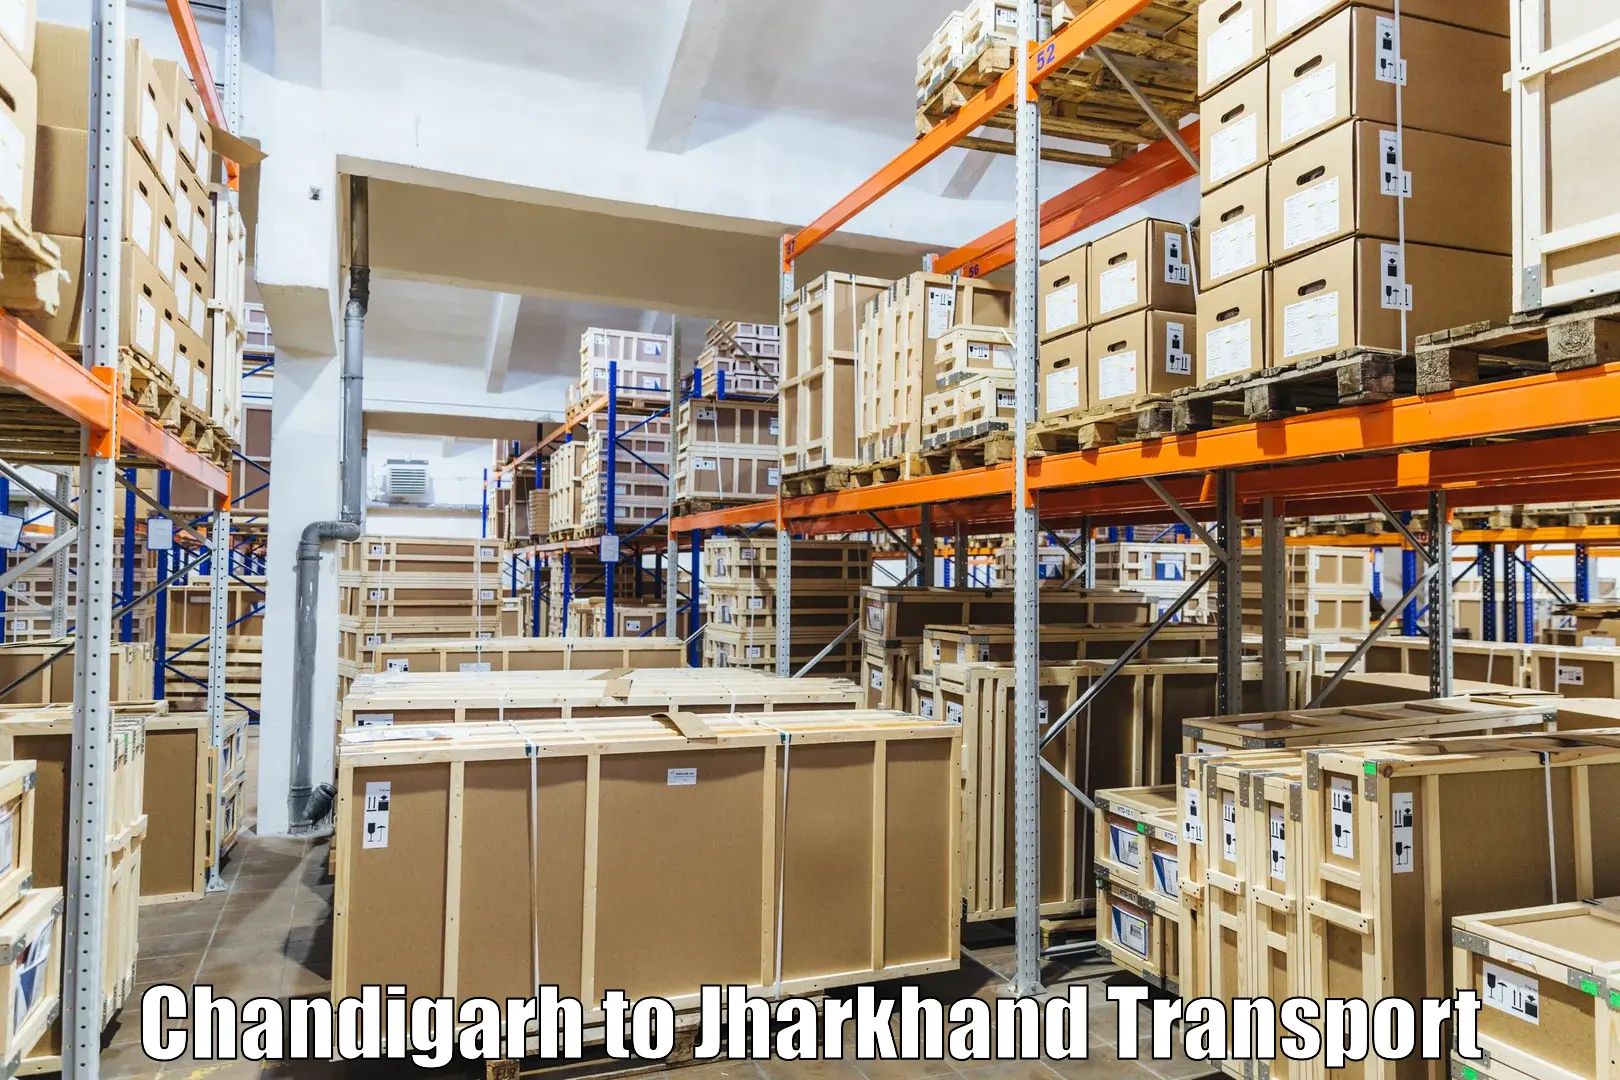 Truck transport companies in India Chandigarh to Lohardaga